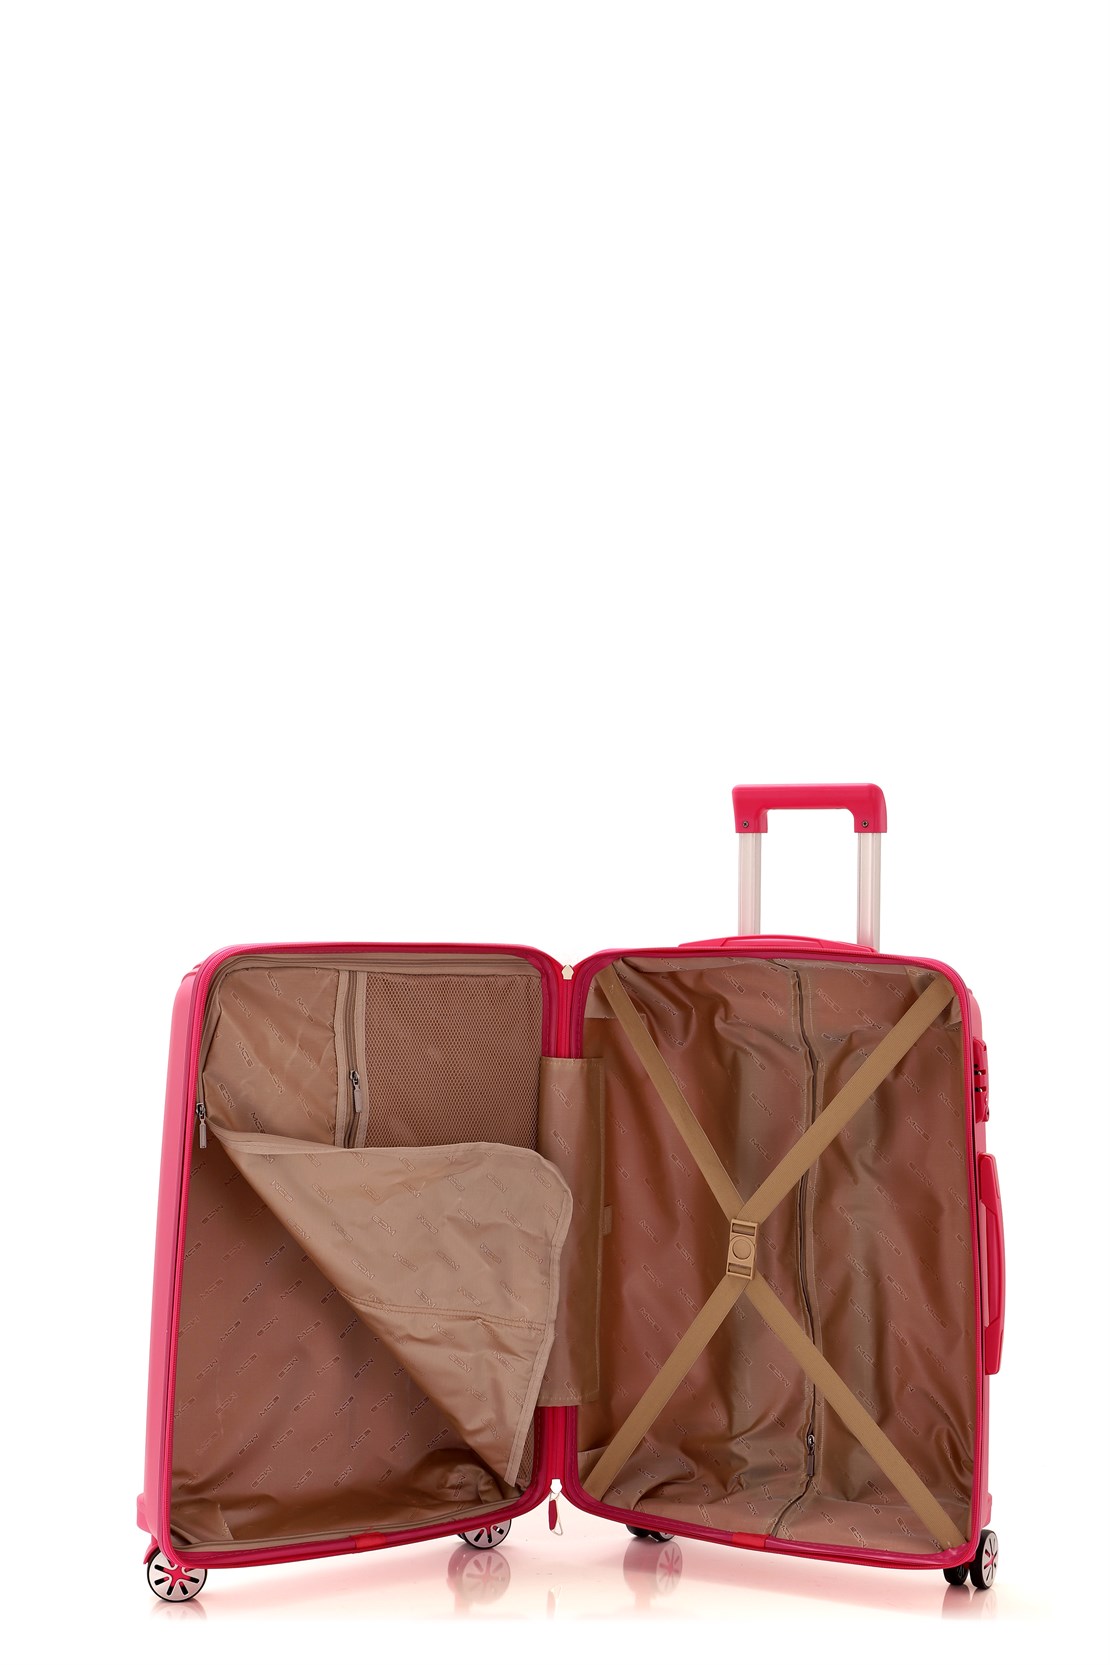 Маленький чемодан для ручьной клади из полипропилена MCS V305 S ! Для 8-10 кг! - 2